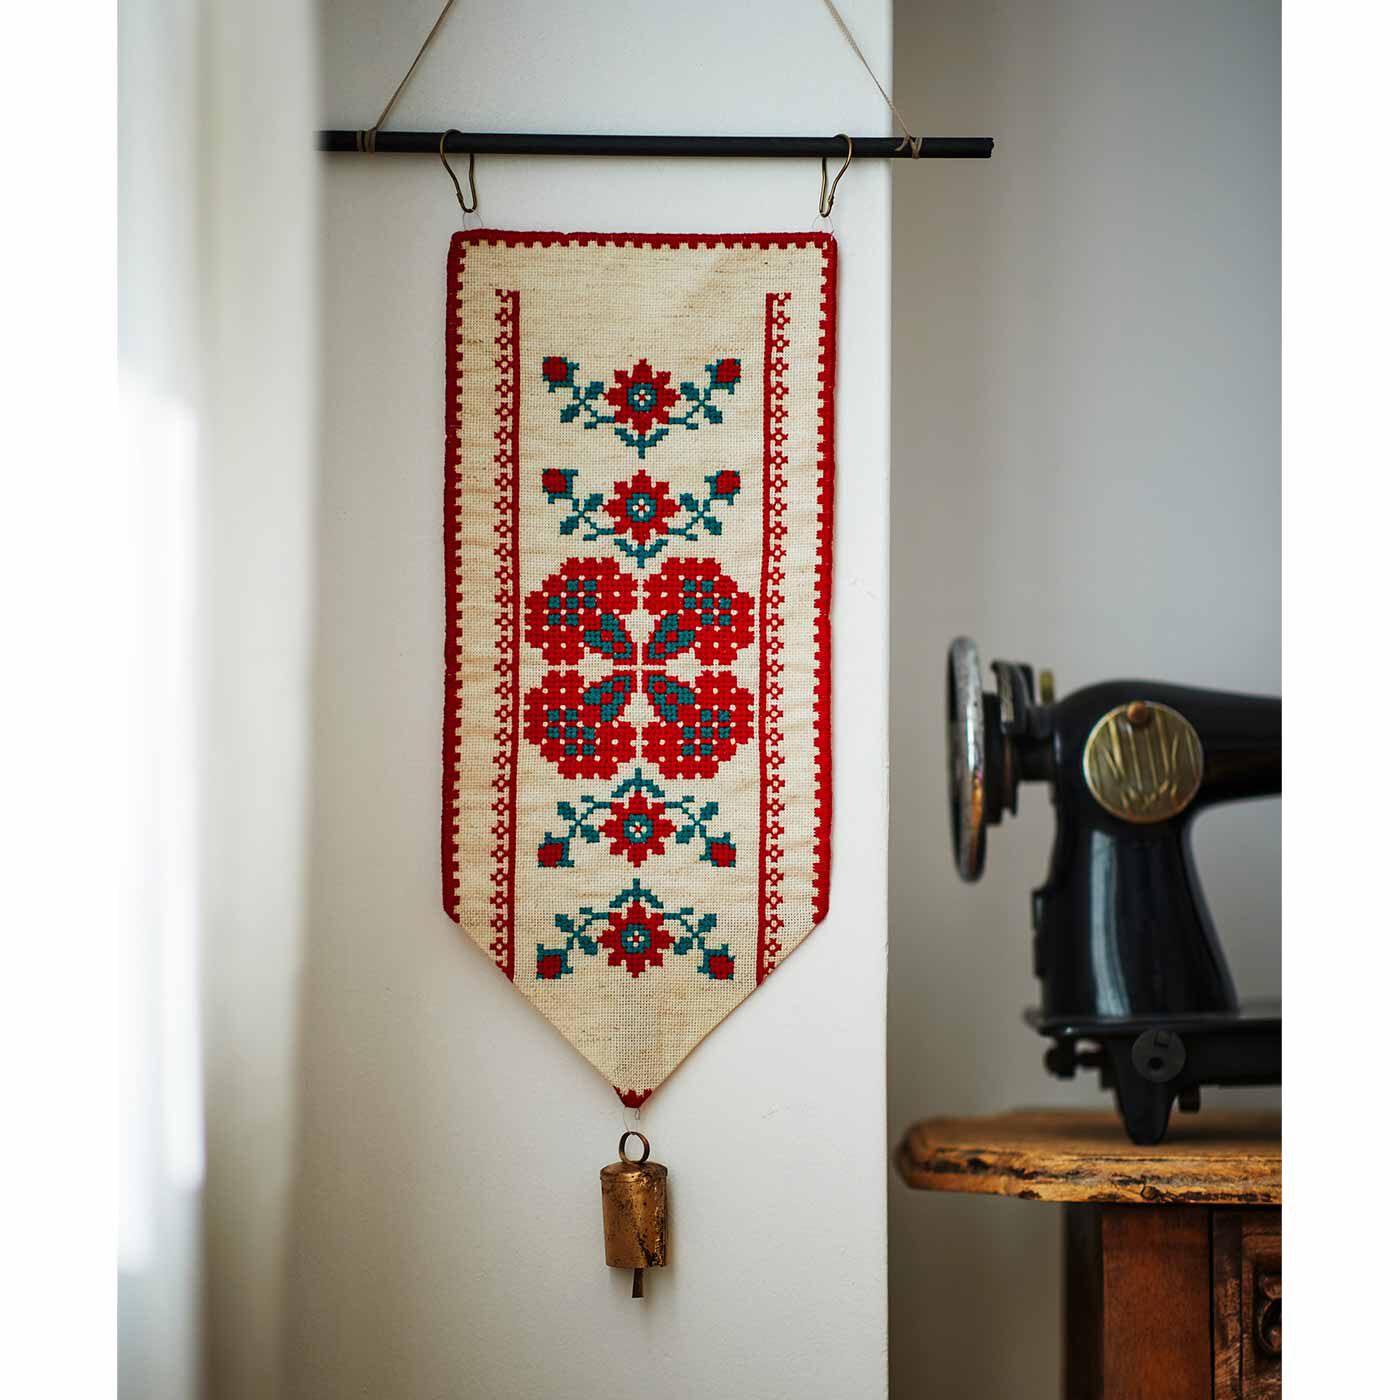 クチュリエ|トランシルヴァニアからの贈り物 カロタセグの編みクロスステッチタペストリーの会|一枚でも存在感たっぷり。カウベルを付けてベルプルにしても。